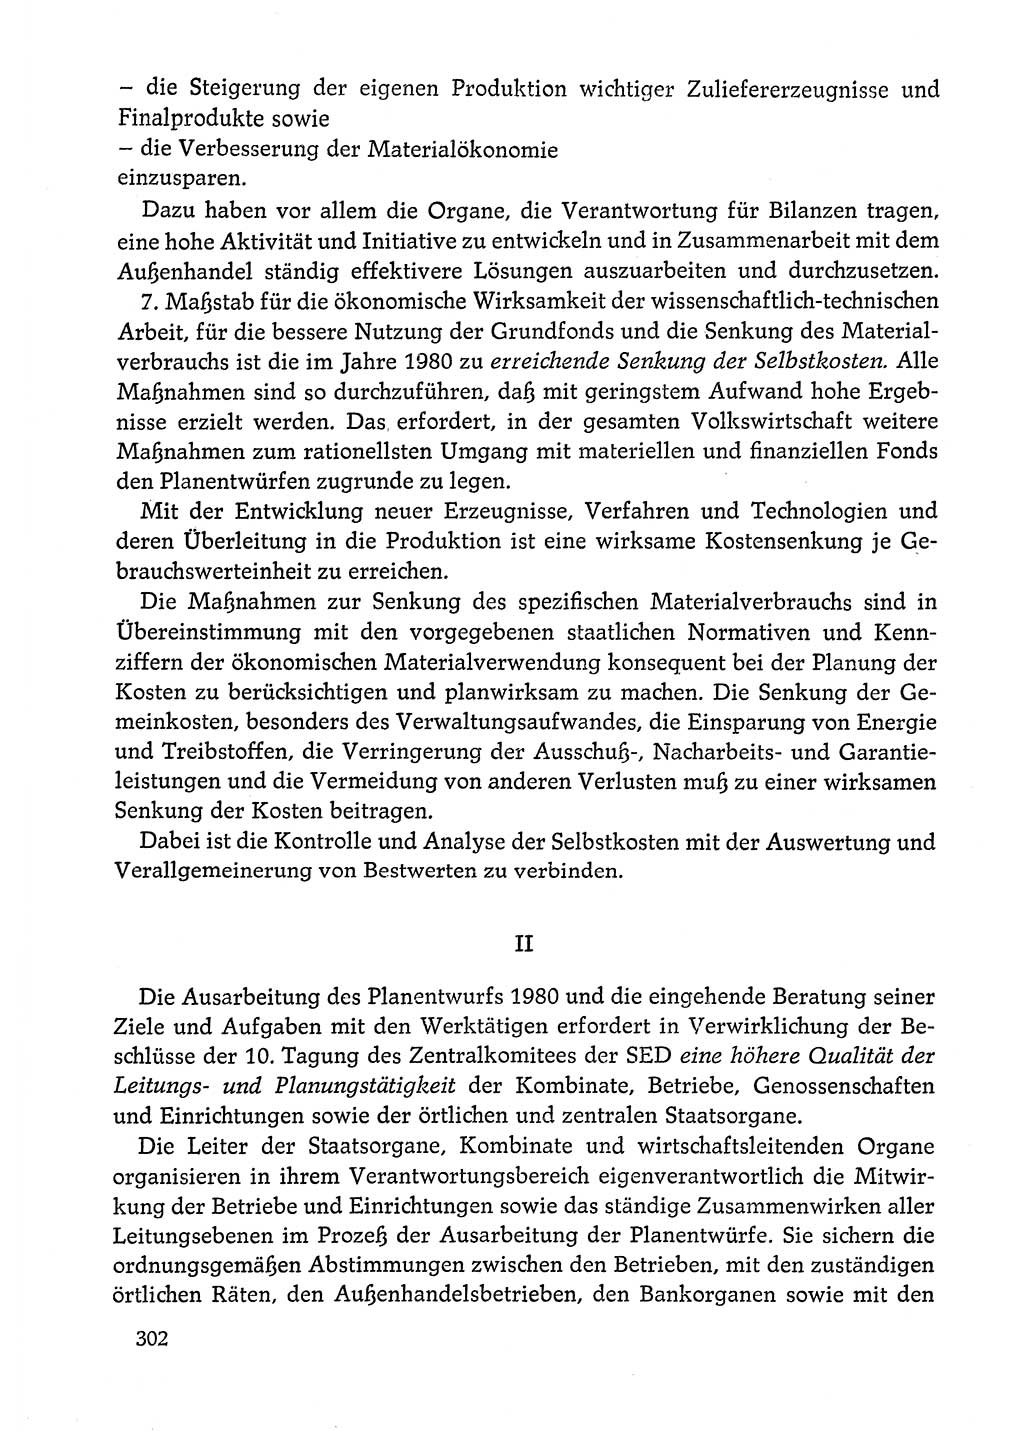 Dokumente der Sozialistischen Einheitspartei Deutschlands (SED) [Deutsche Demokratische Republik (DDR)] 1978-1979, Seite 302 (Dok. SED DDR 1978-1979, S. 302)